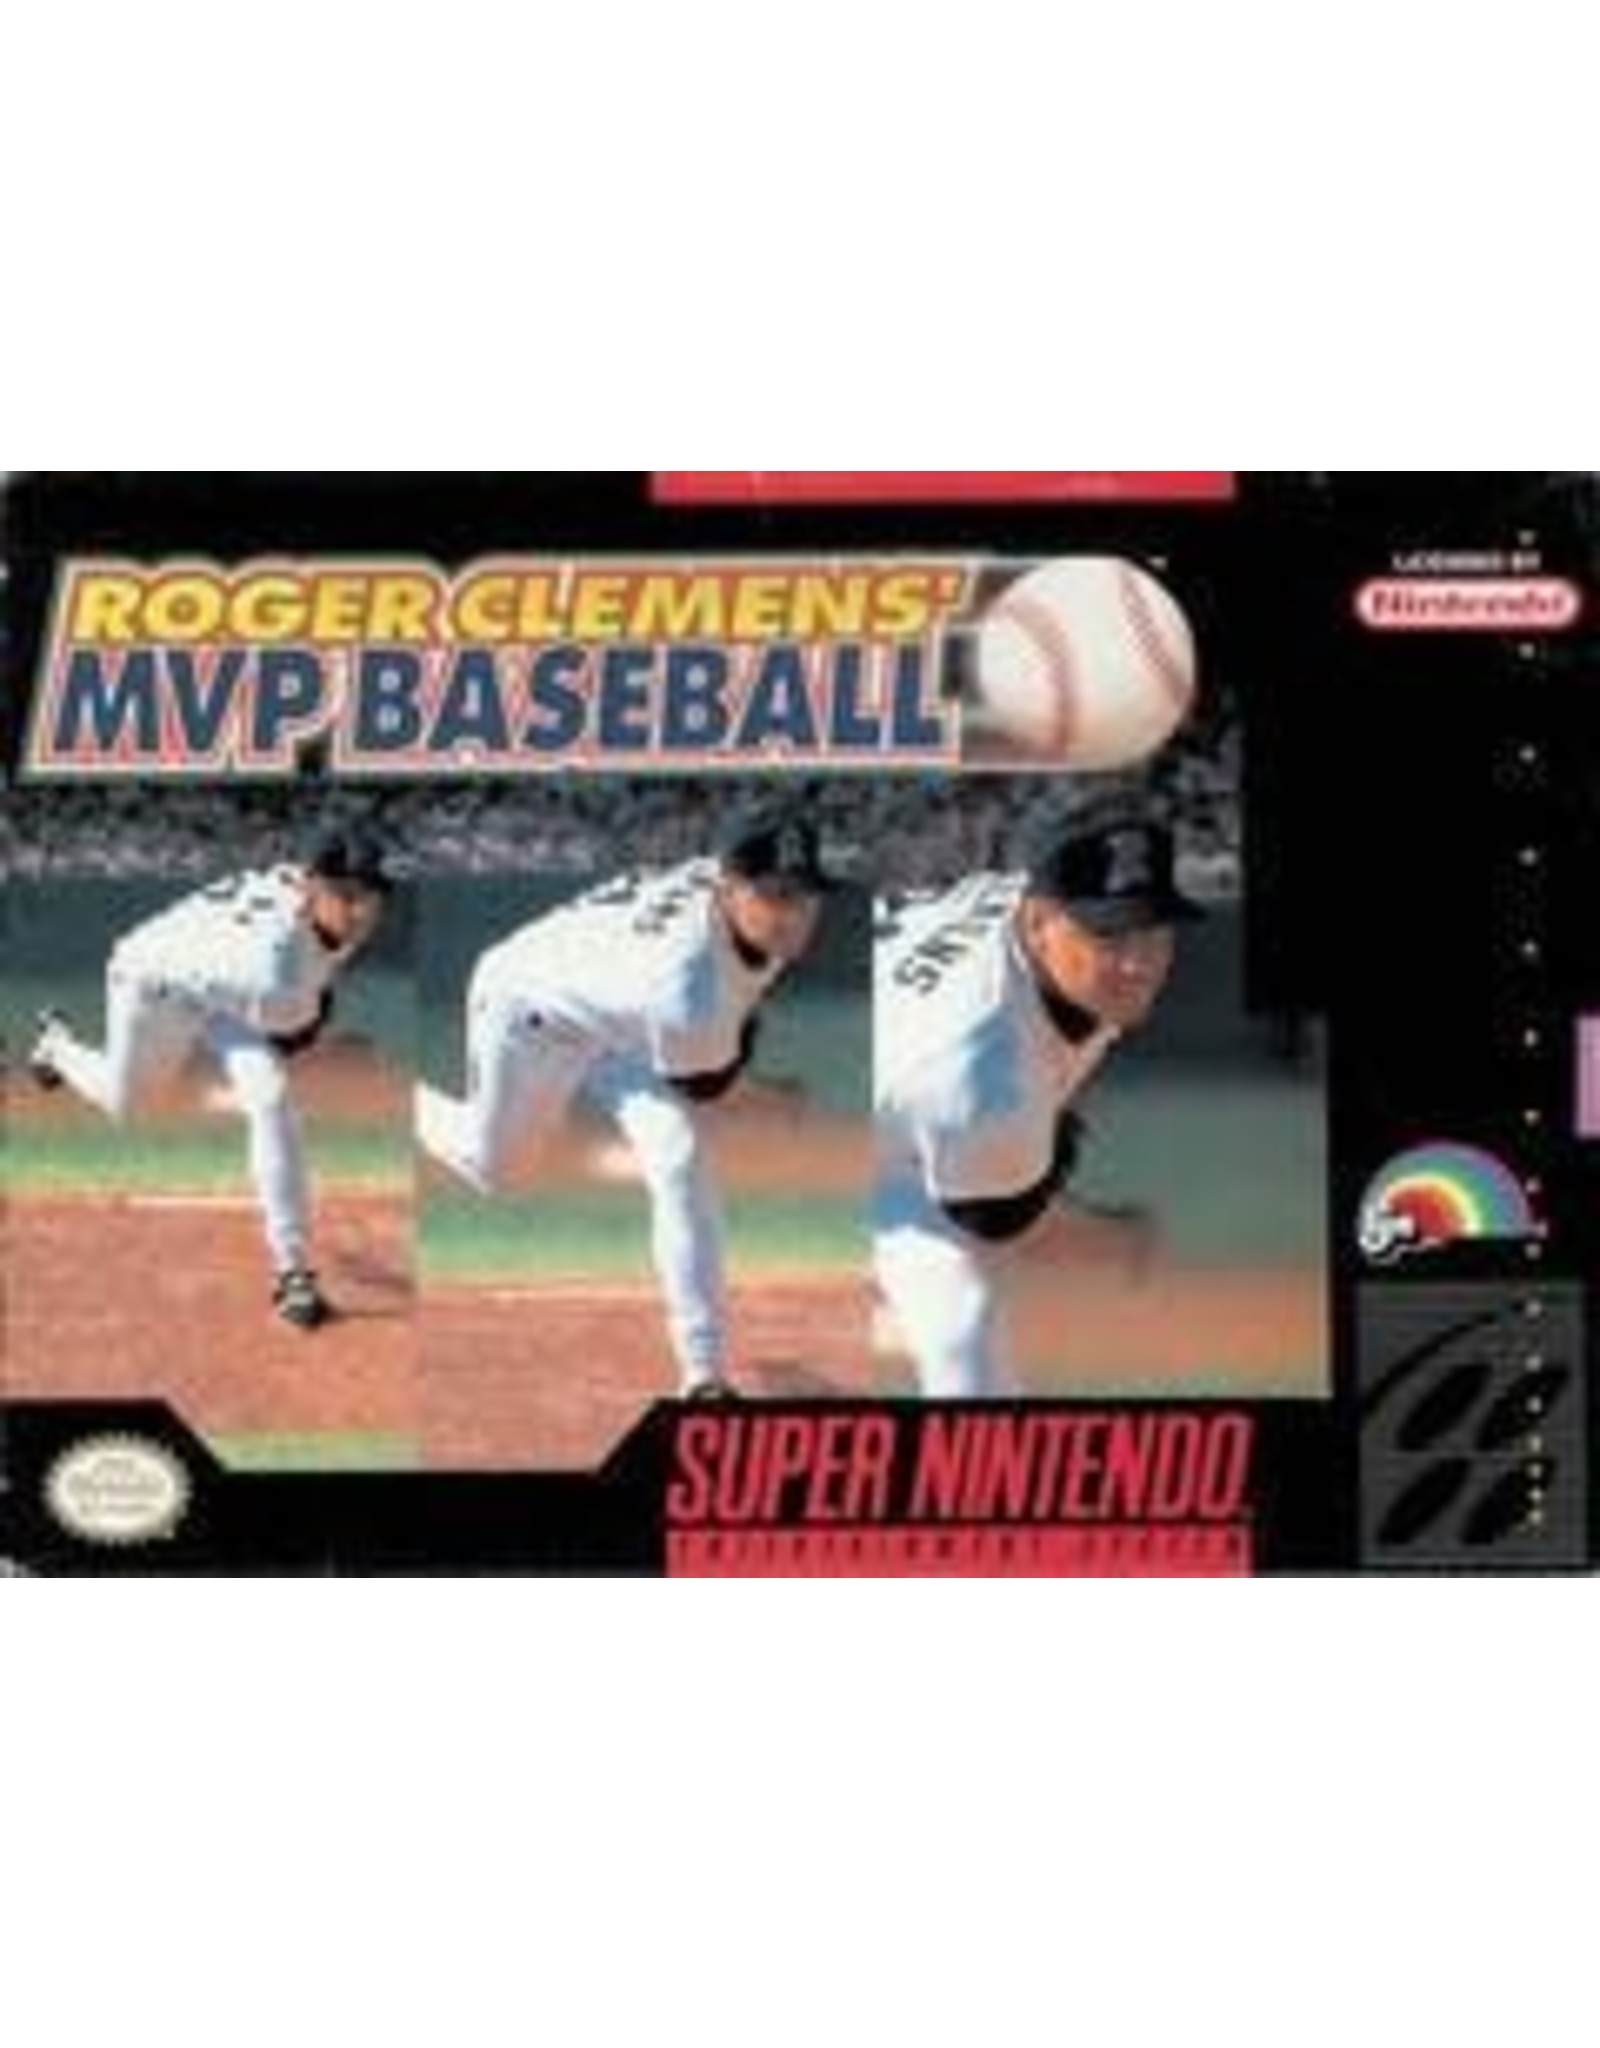 Super Nintendo Roger Clemens' MVP Baseball (Cart Only)